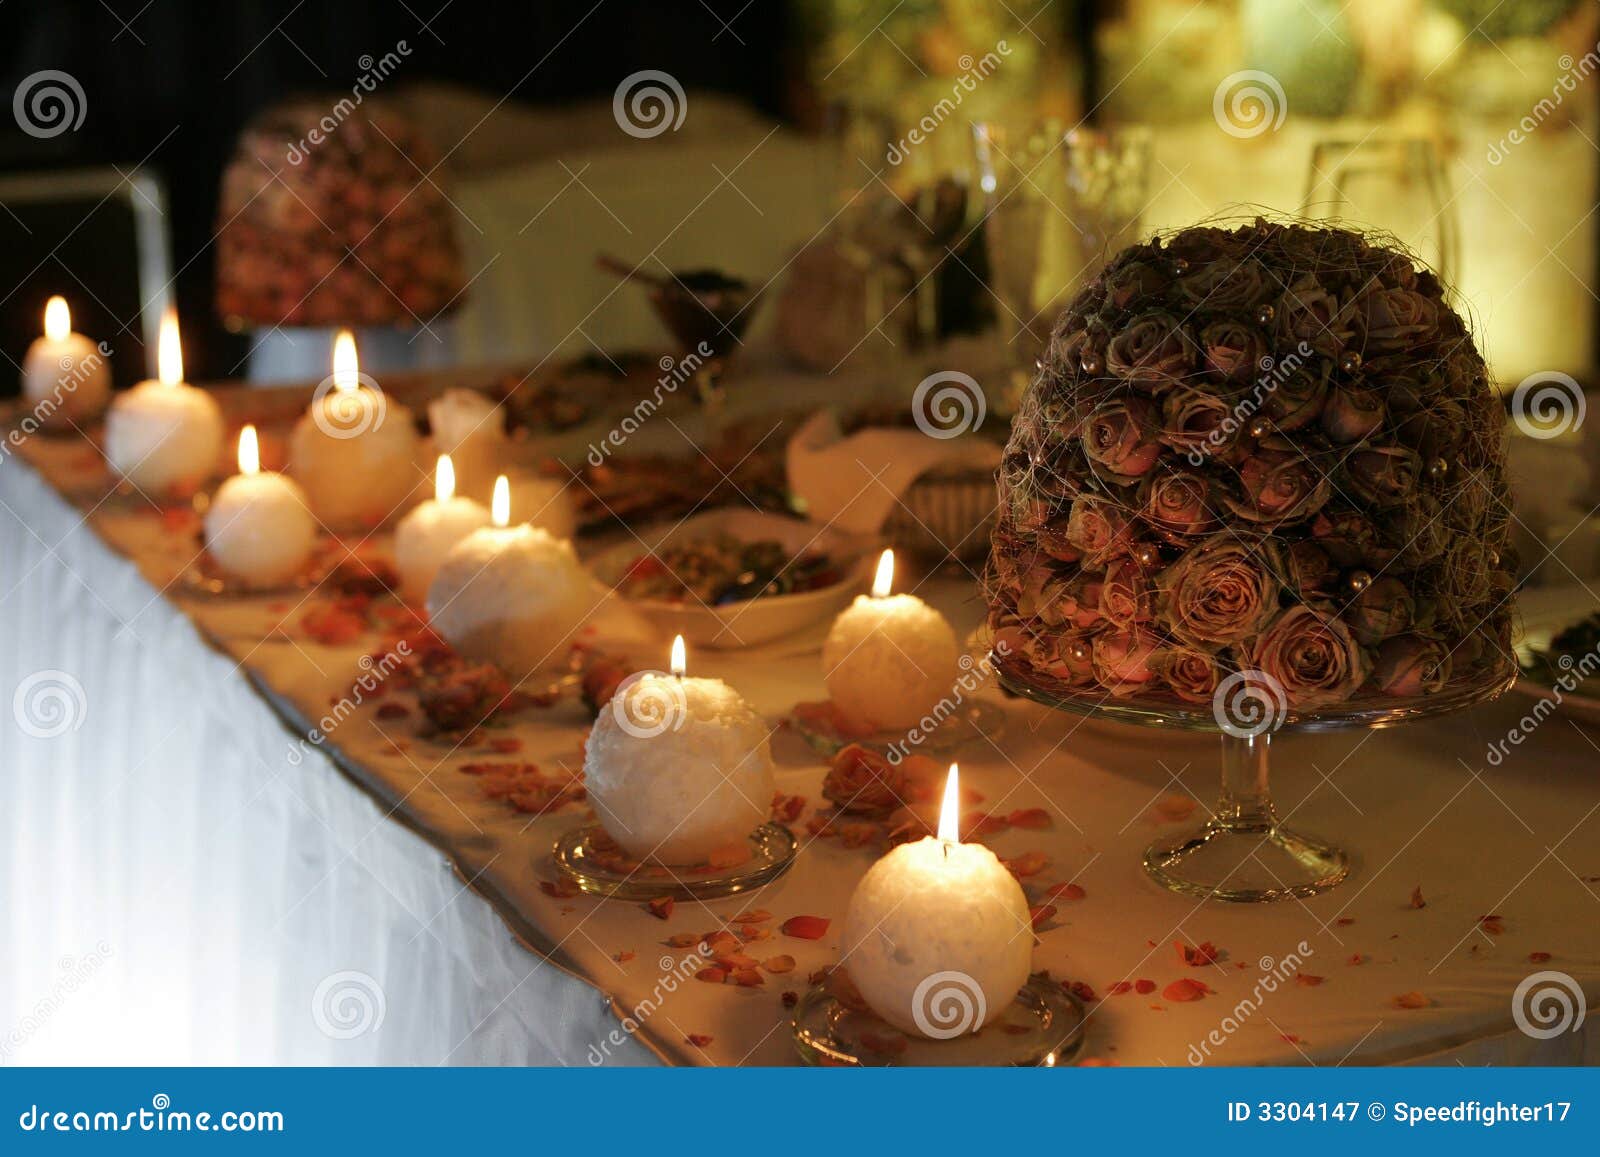 灼烧的蜡烛表. 灼烧的蜡烛装饰了被看见一些表的花